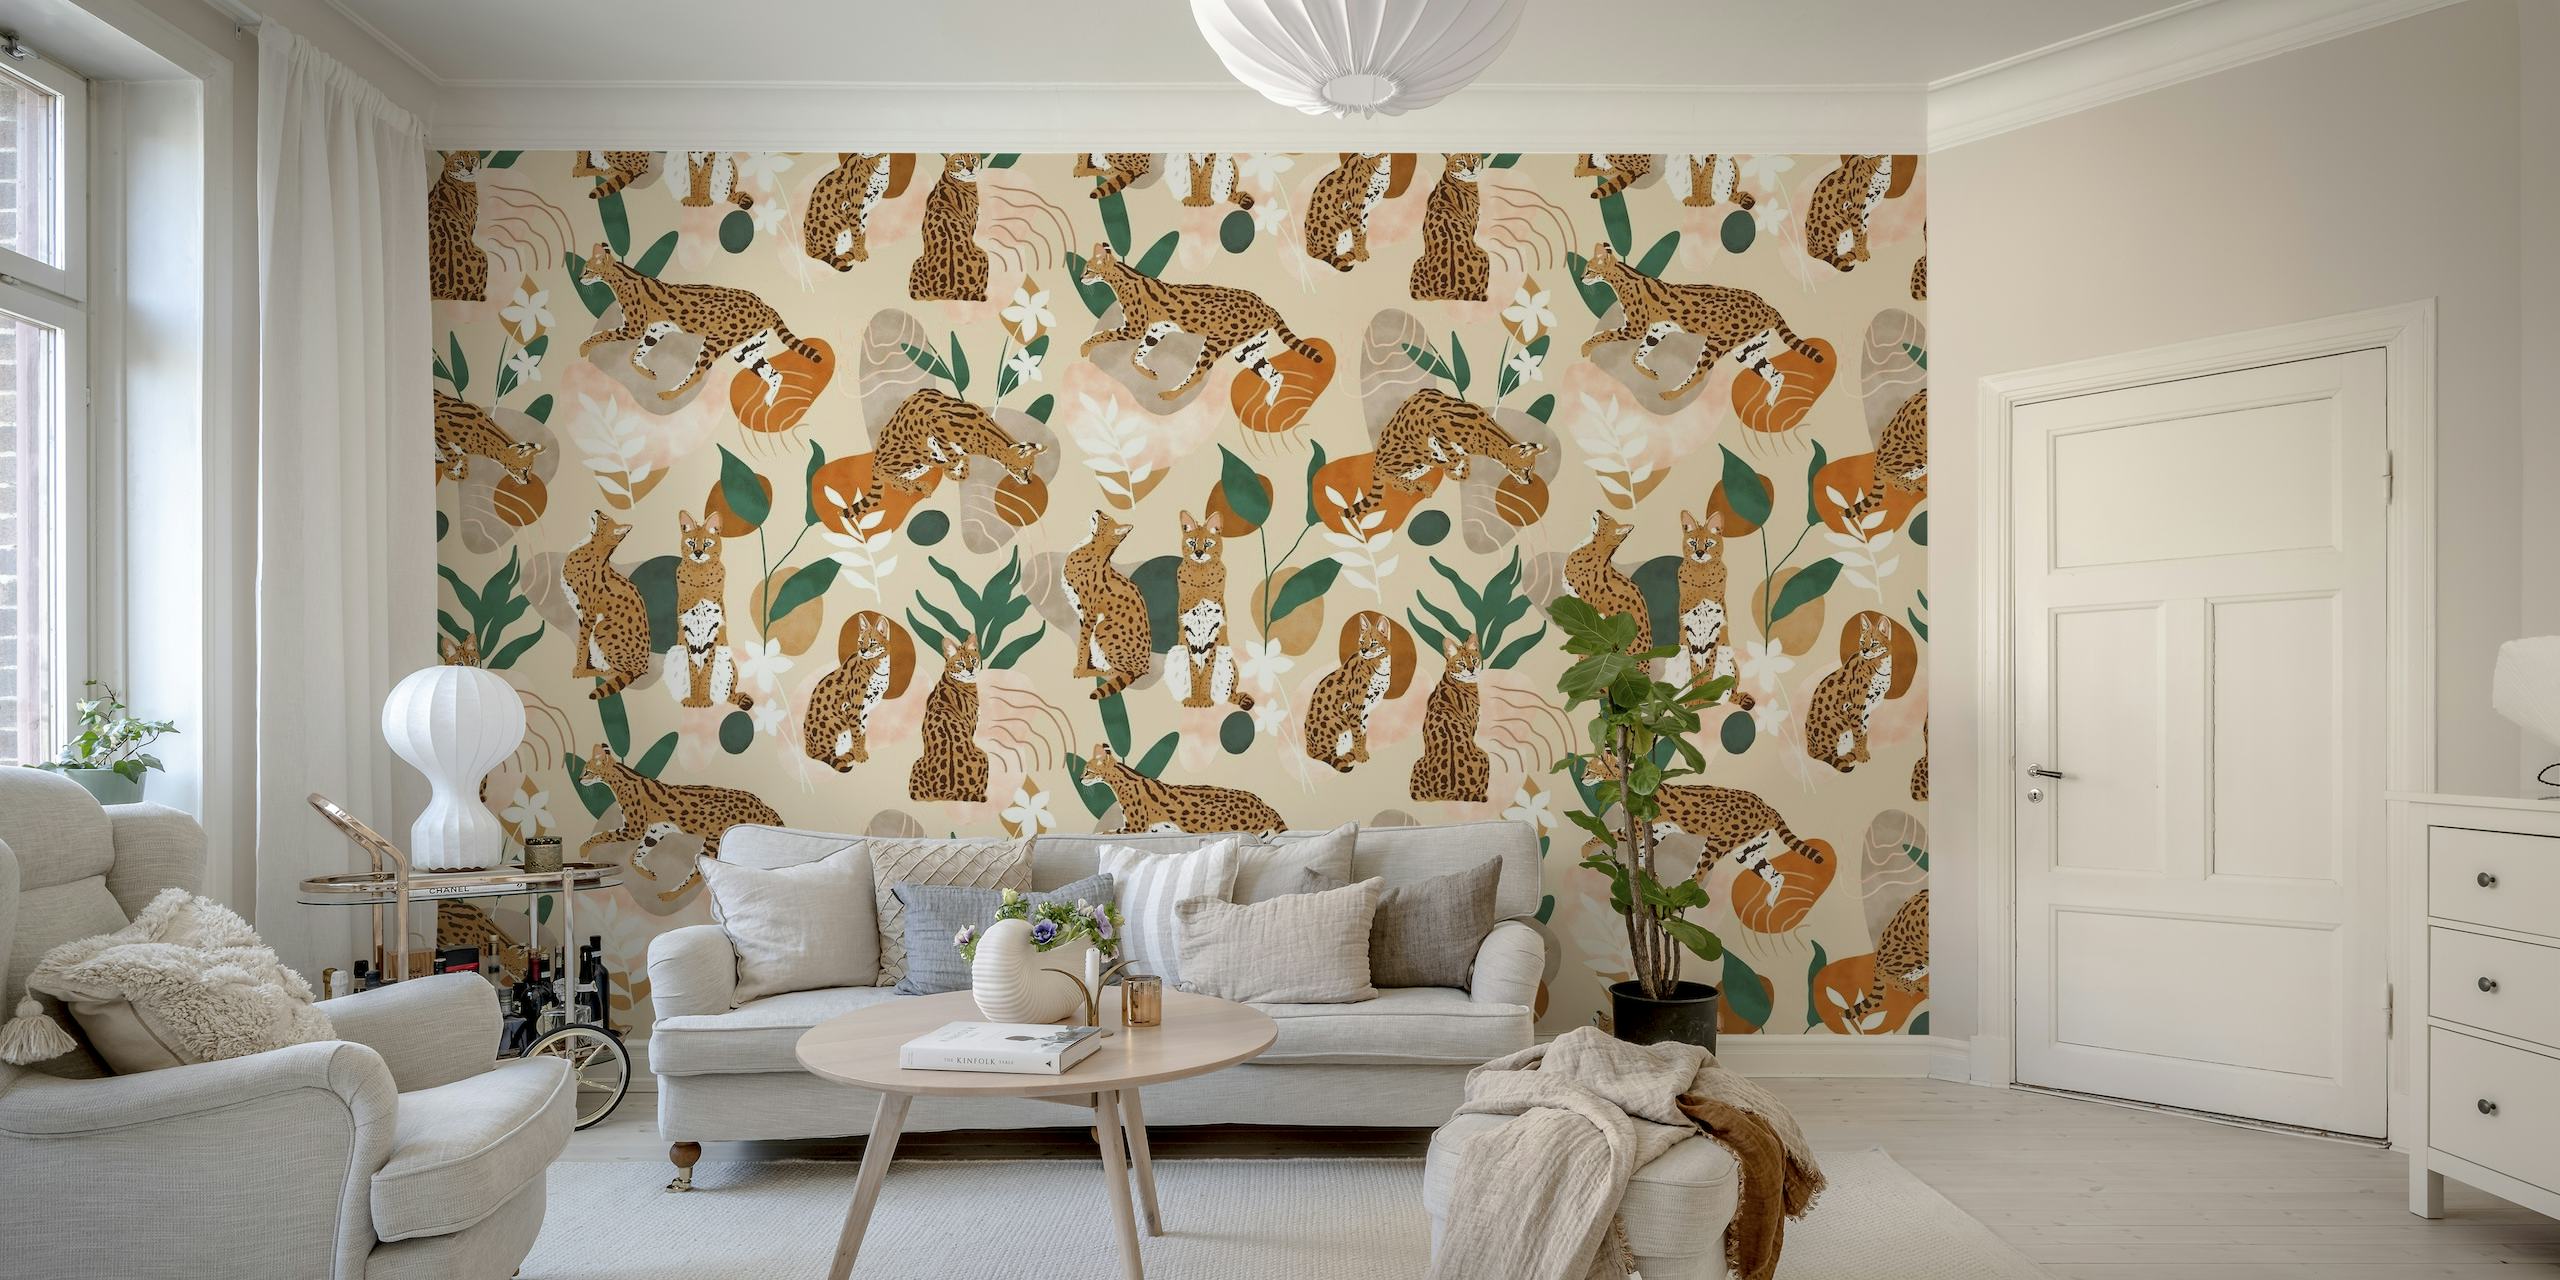 Papier peint nature abstrait chat Serval avec des félins stylisés et des motifs végétaux sur fond neutre.